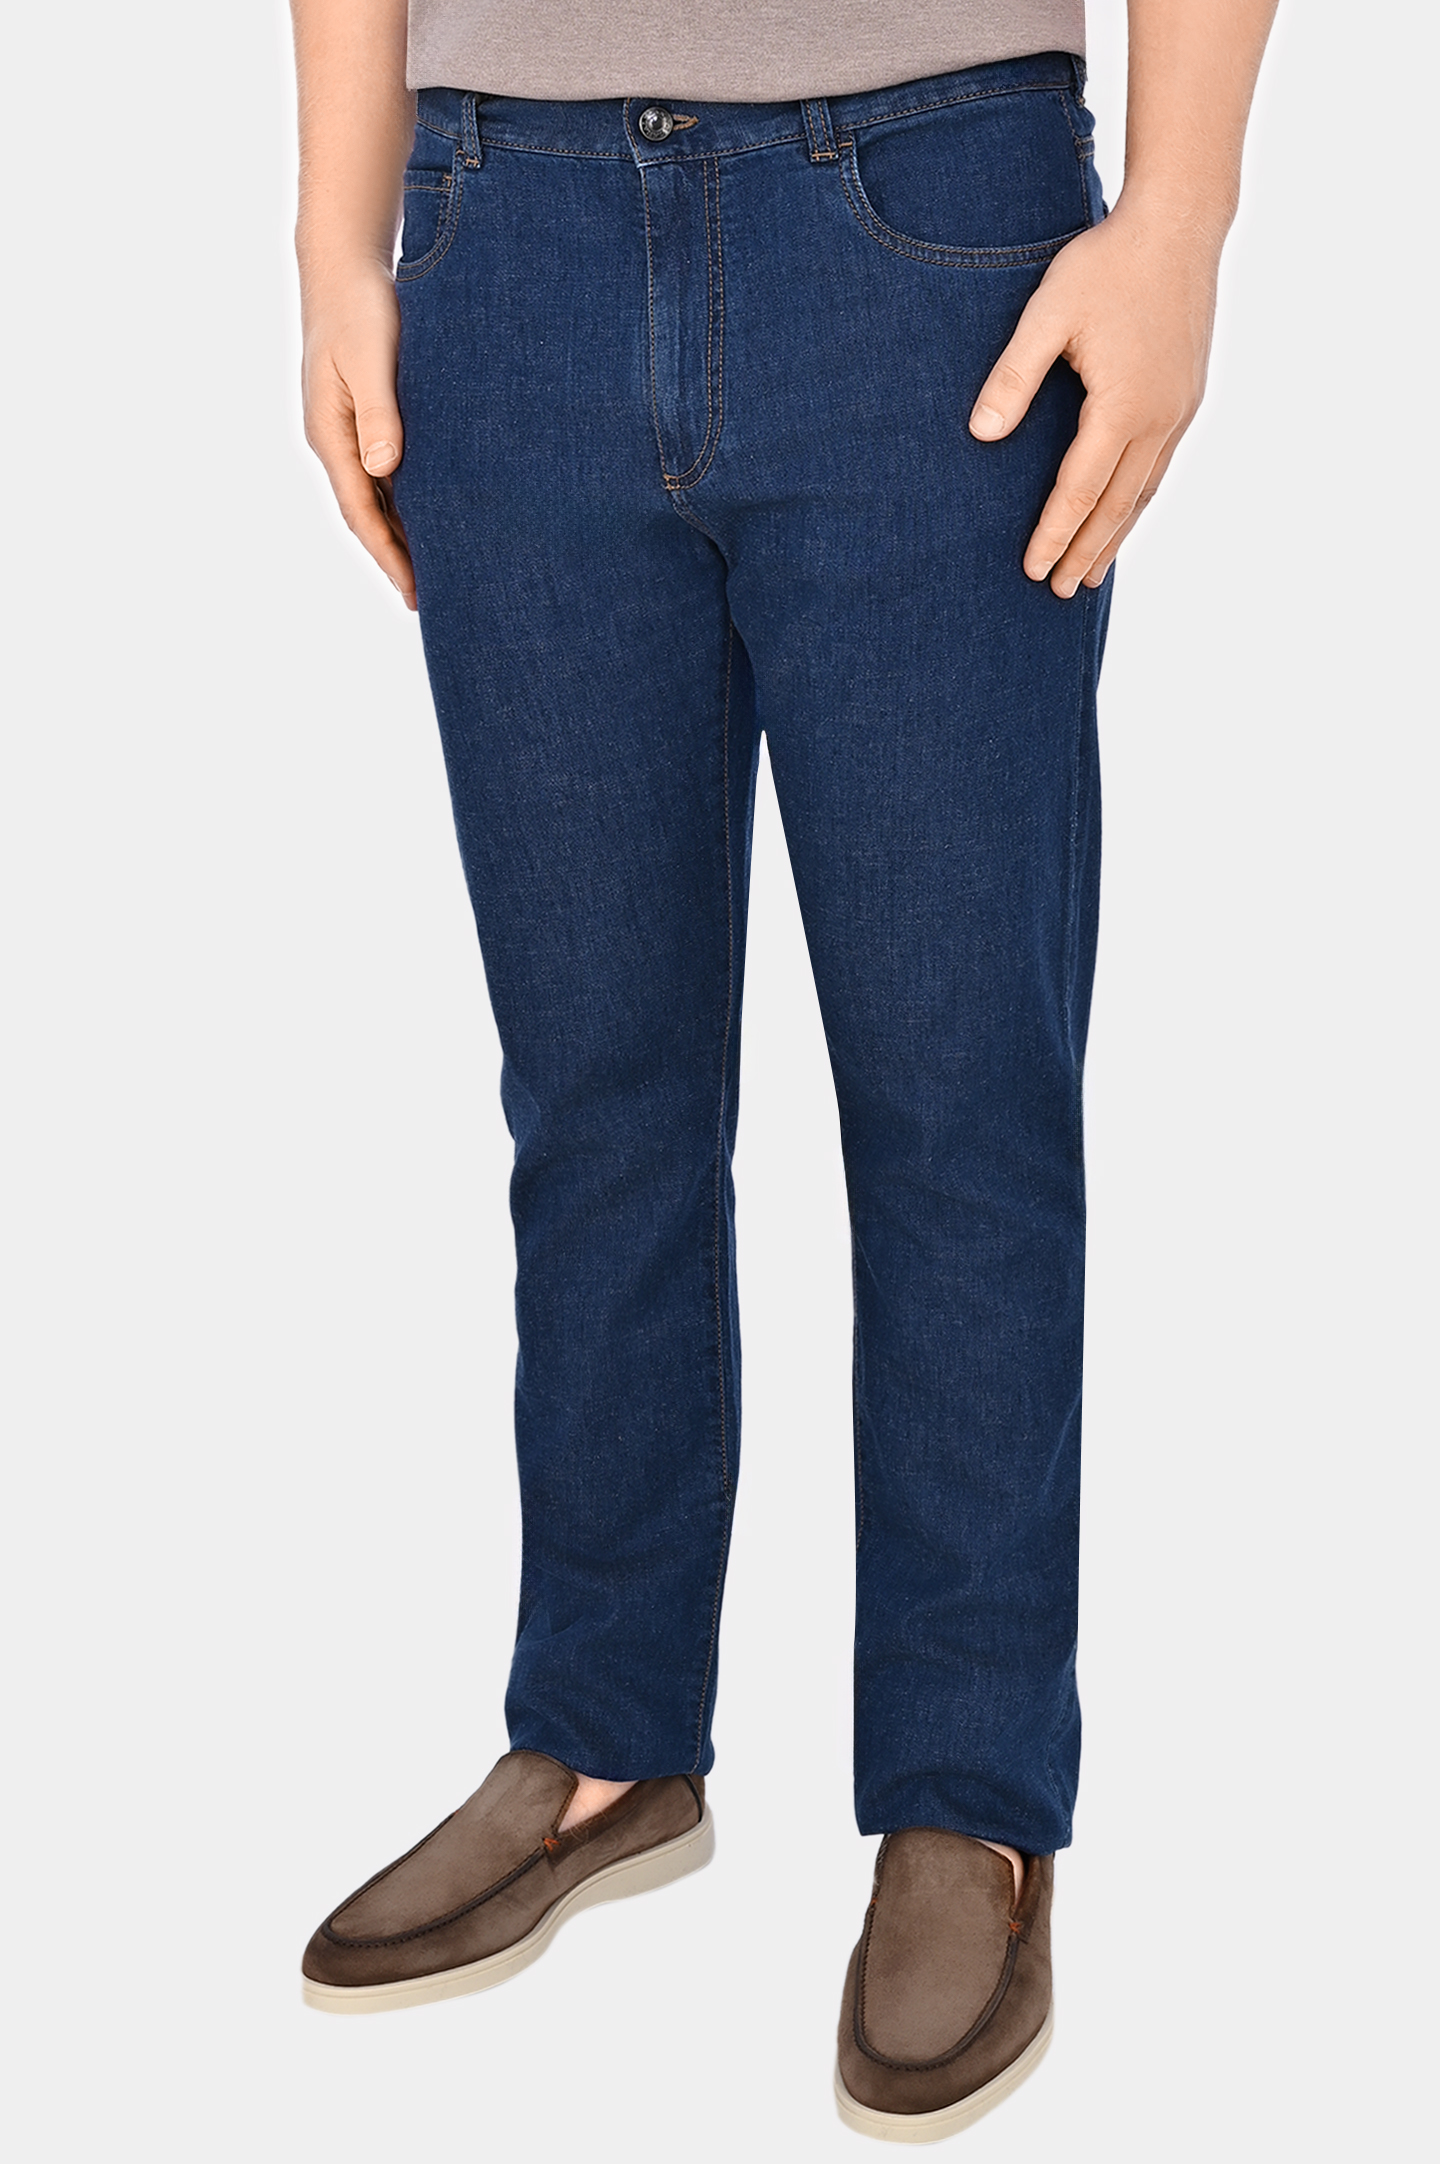 Прямые базовые джинсы CANALI PD01349 91700/1, цвет: Синий, Мужской